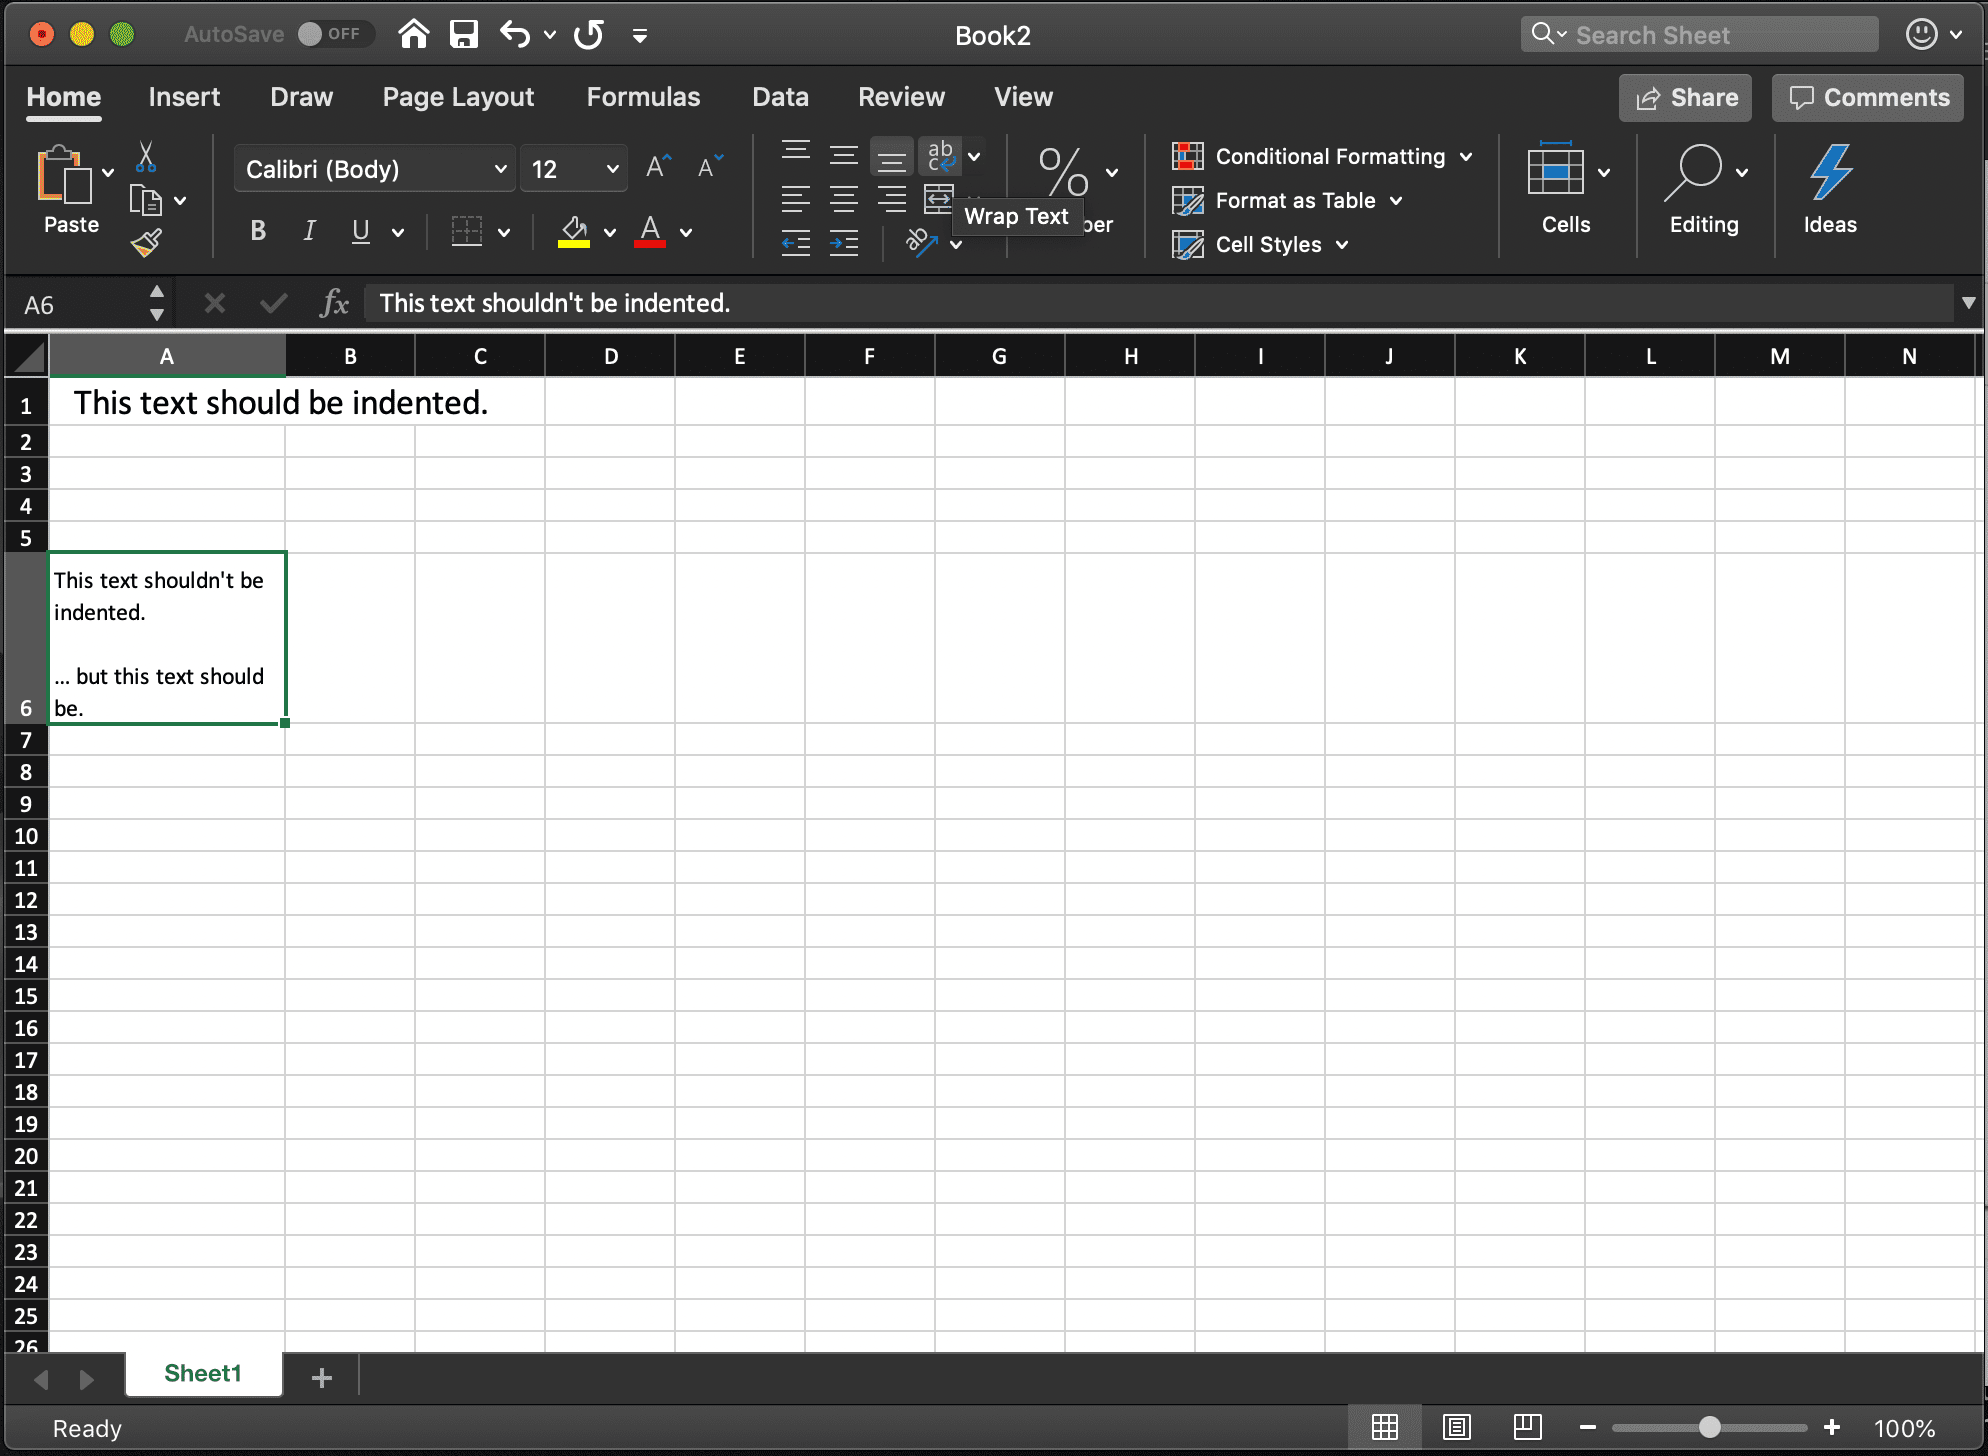 снимок экрана обернутого текста в Excel для macOS